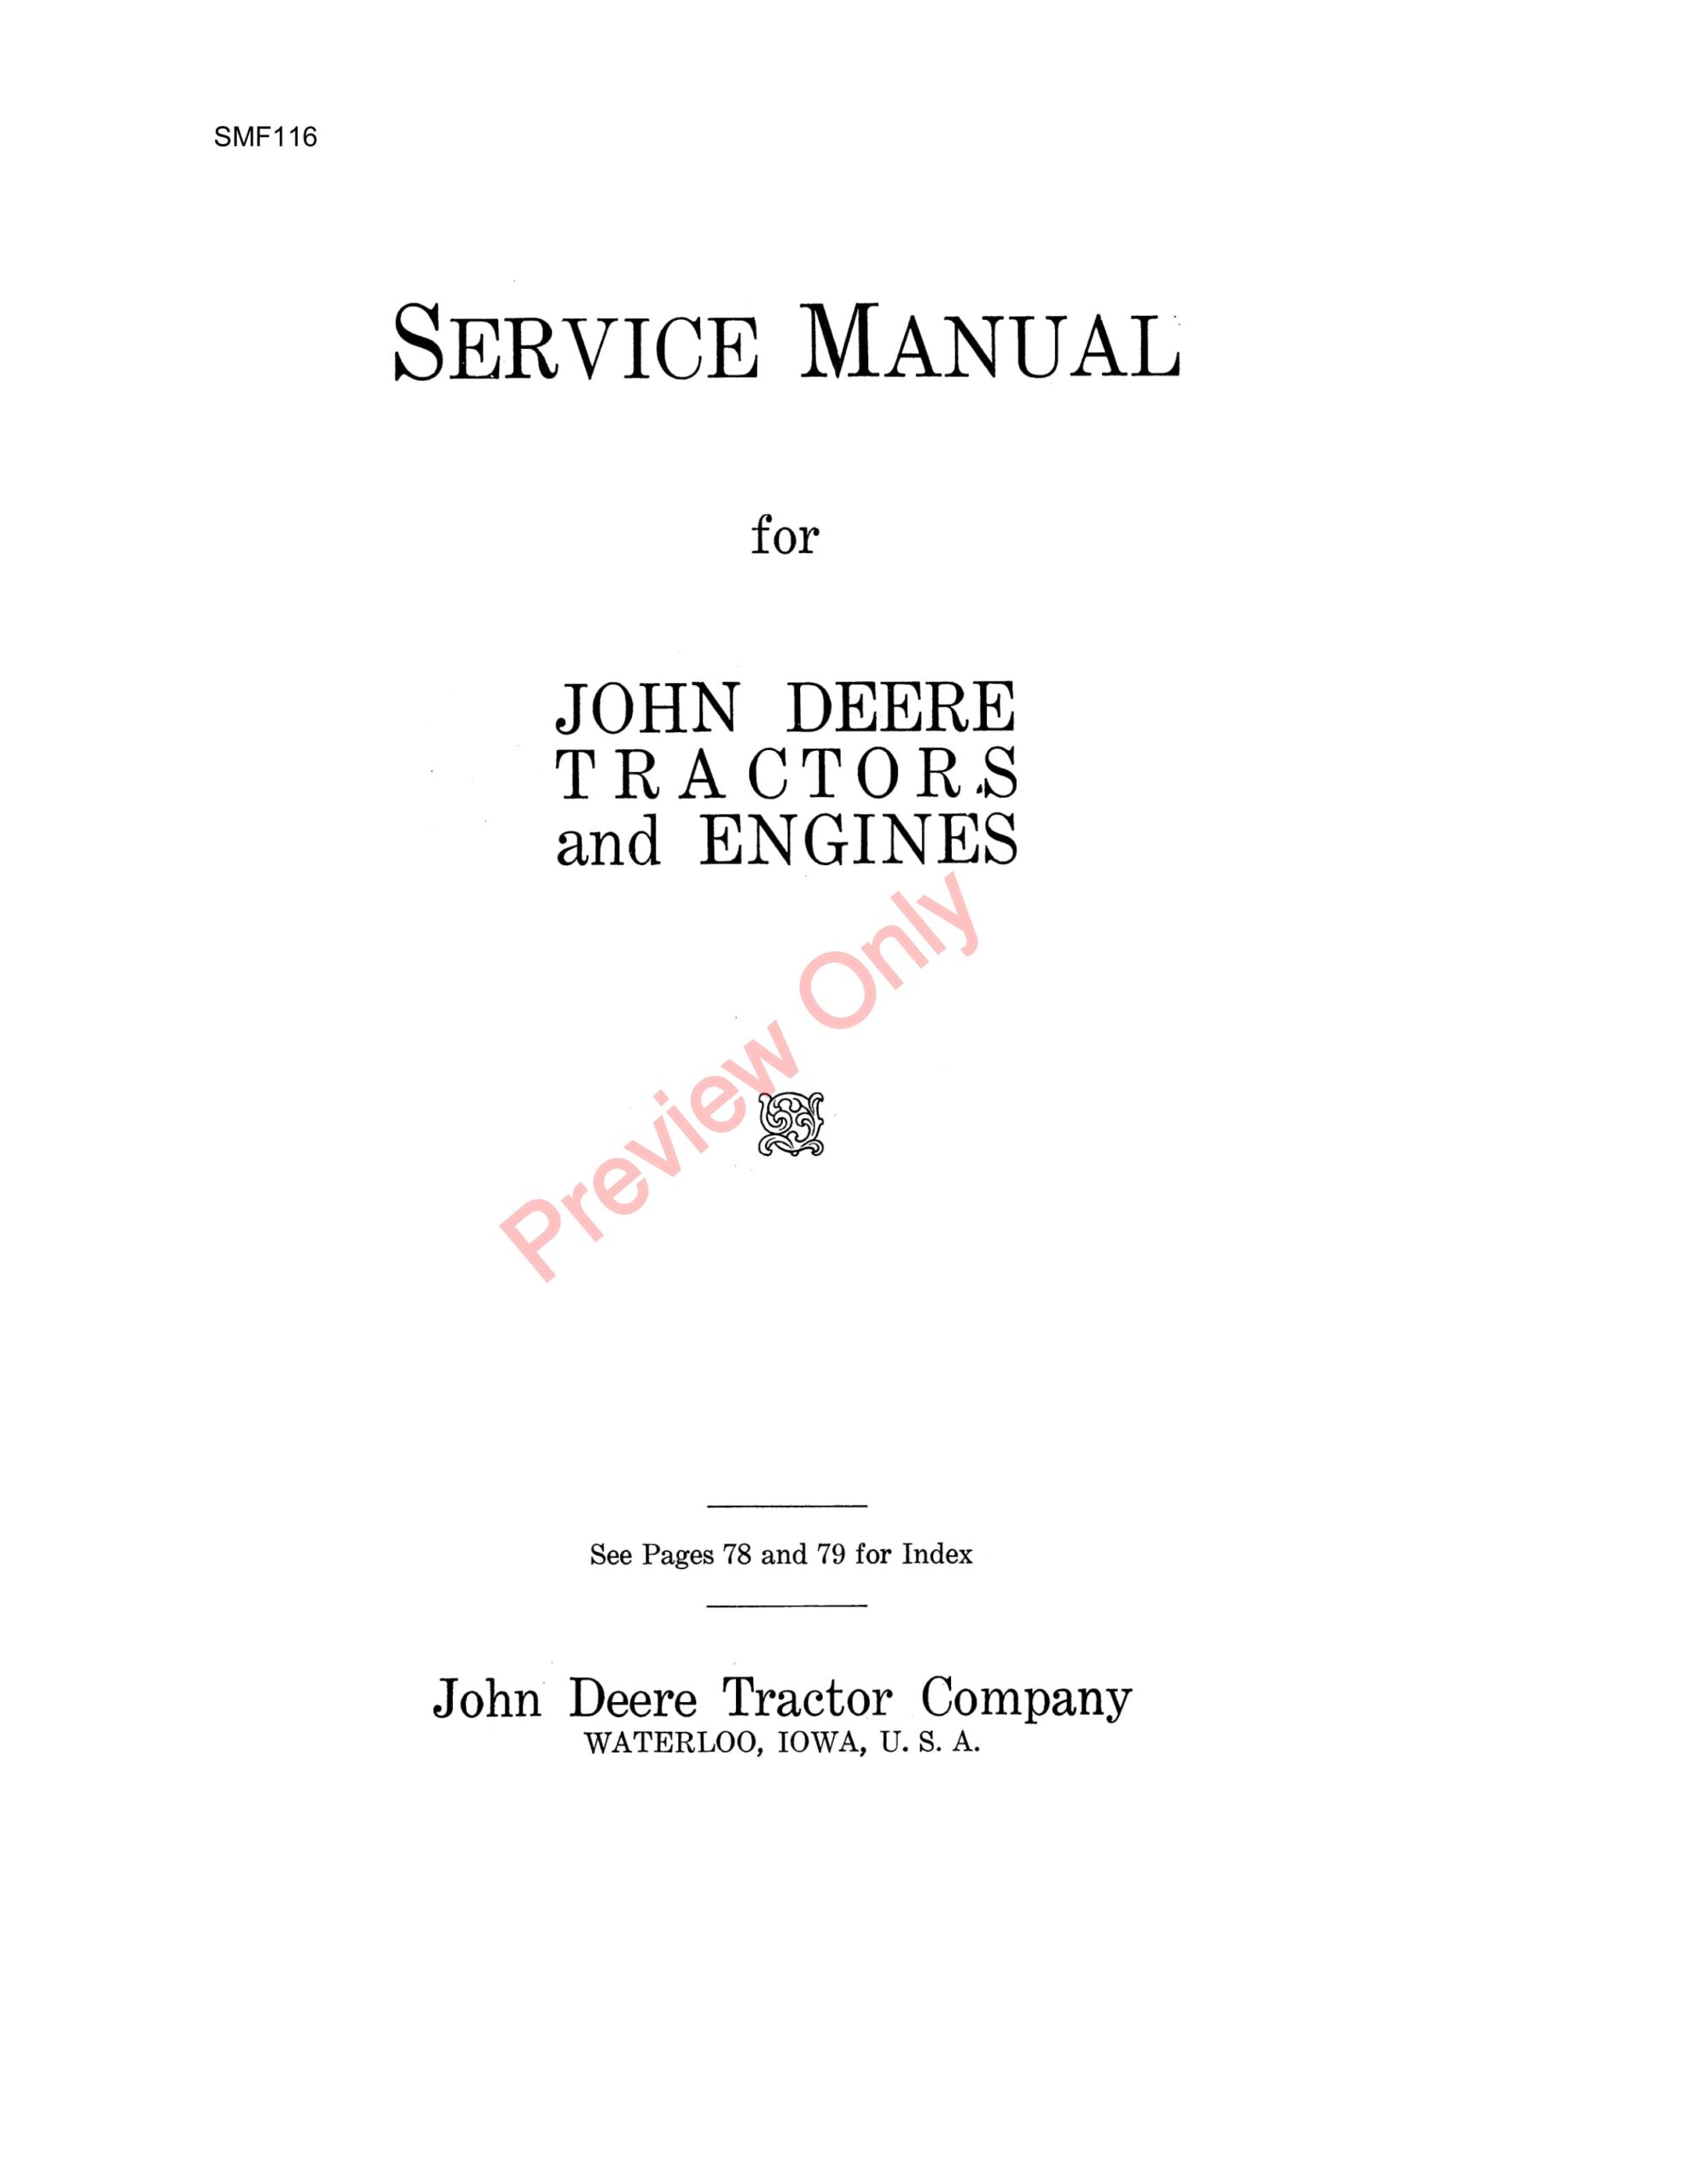 John Deere Model D Tractor (-119099)